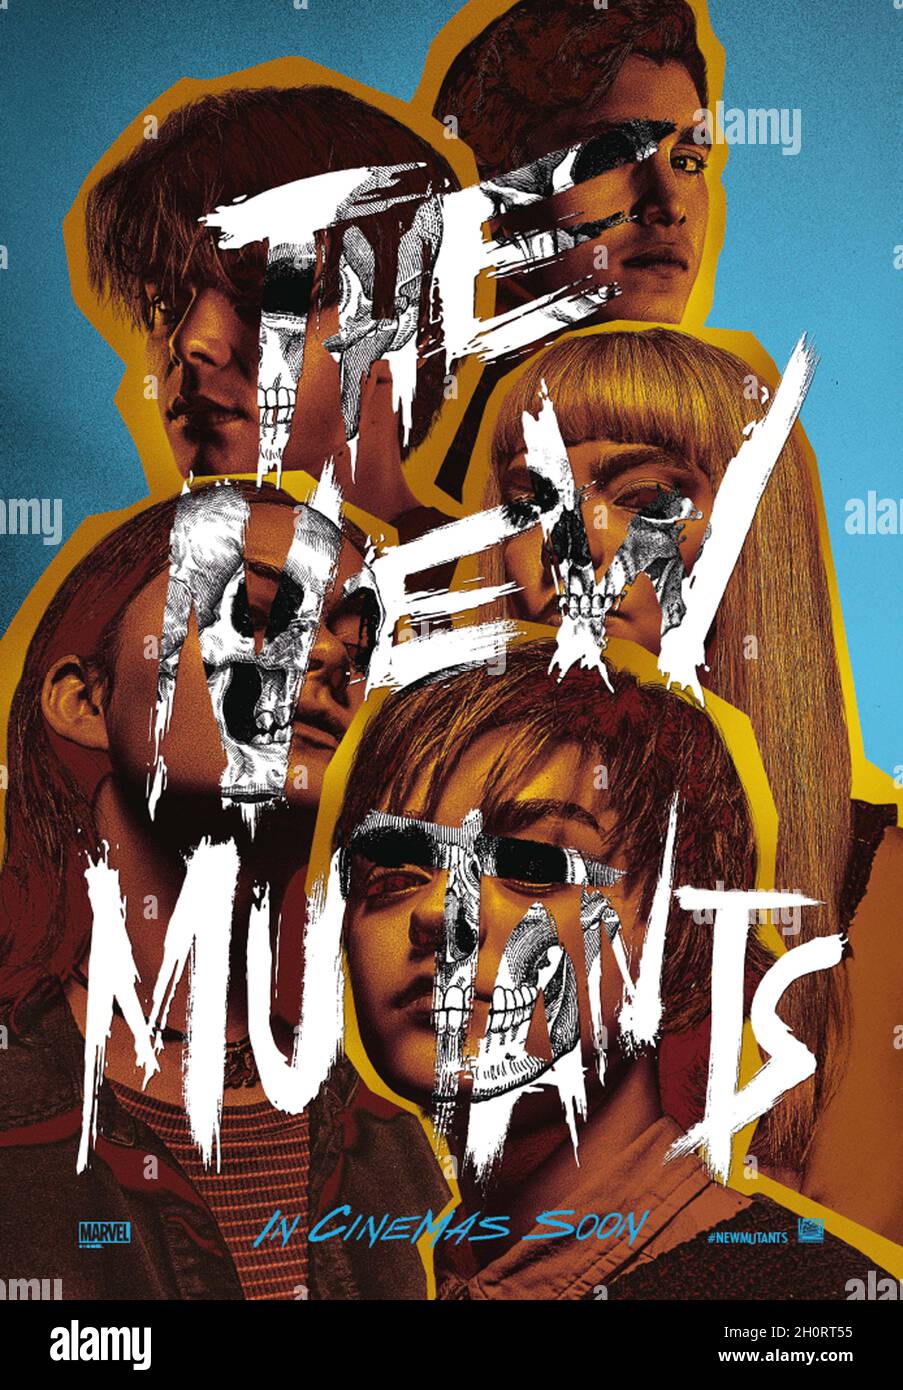 The New Mutants Dare To Escape In New TV Spot